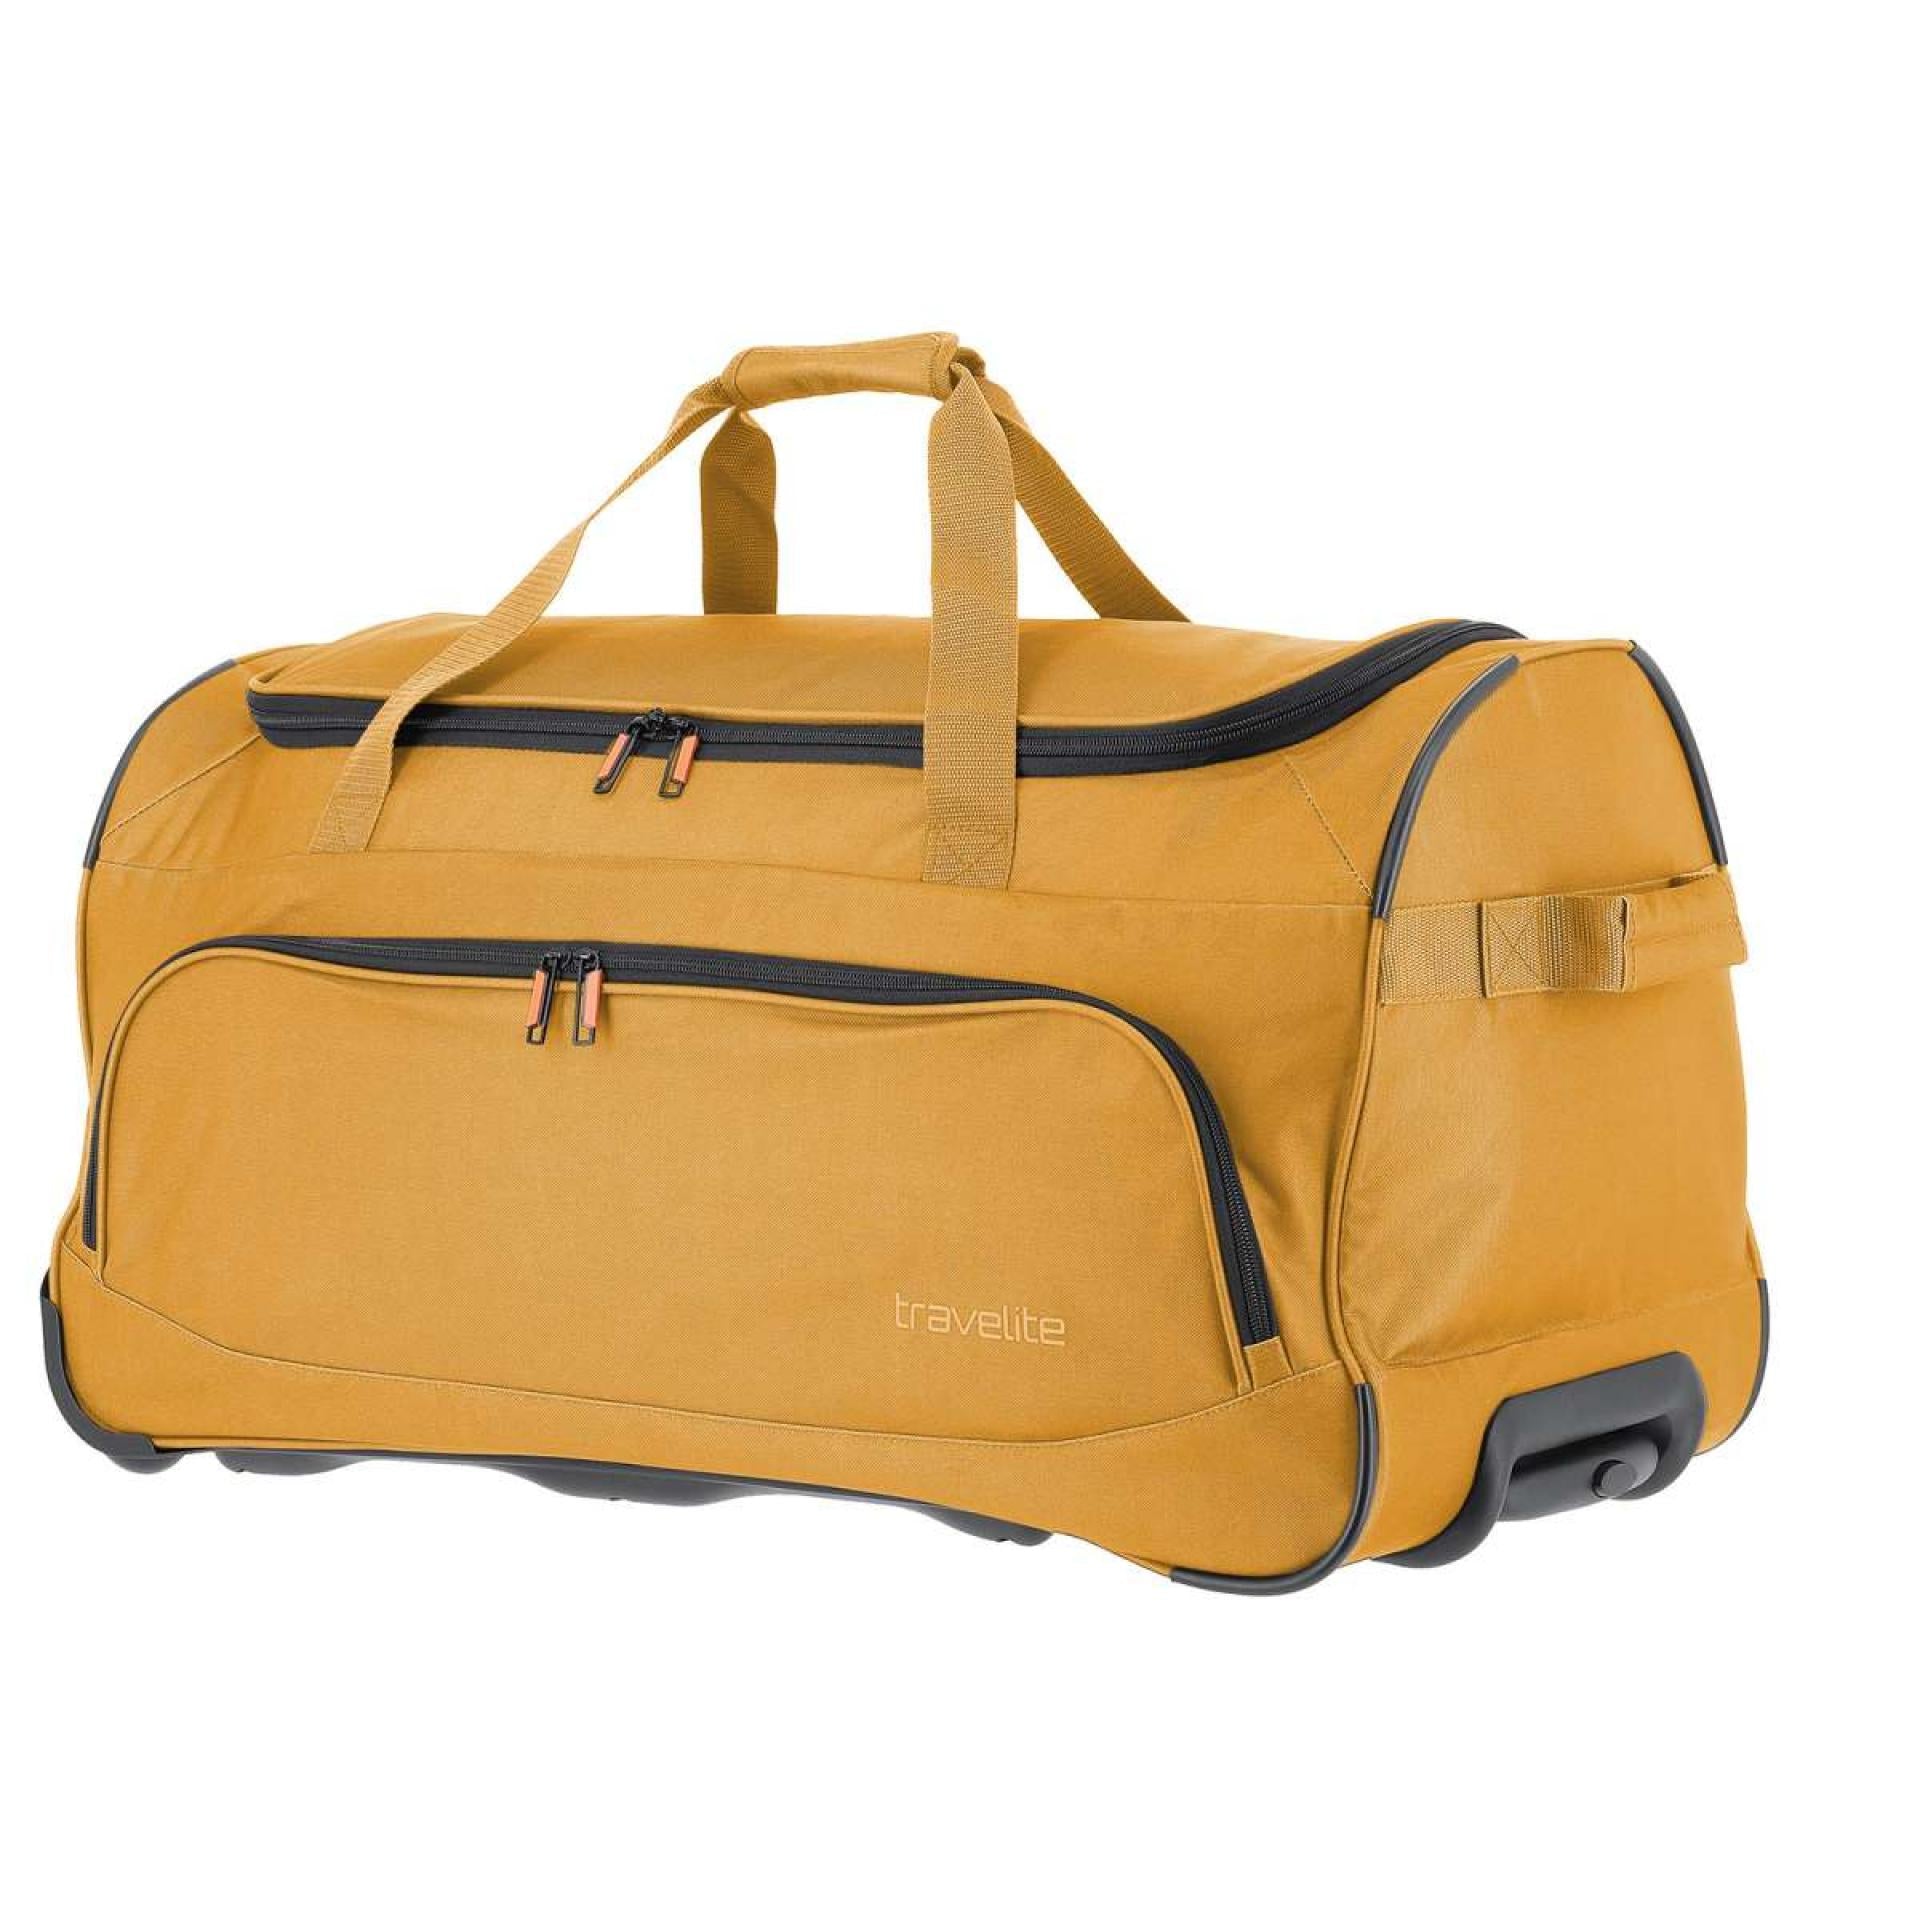 Travelite BASICS FRESH Rollenreisetasche - Variante: Gelb